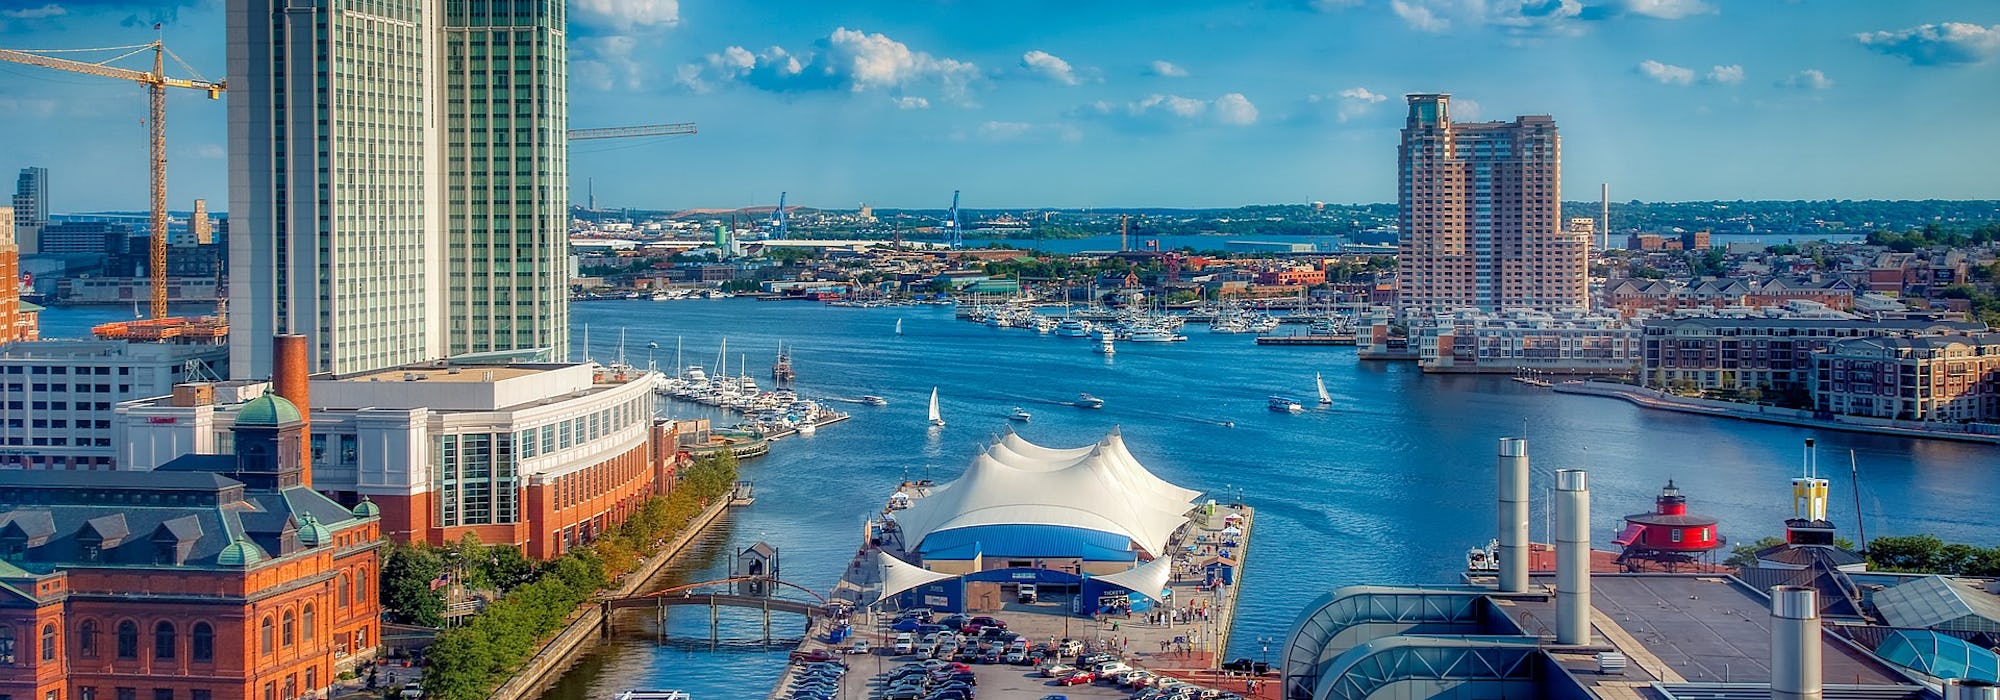 Vild tagen uppifrån på Baltimores hamn med vatten, byggnader och båtar.